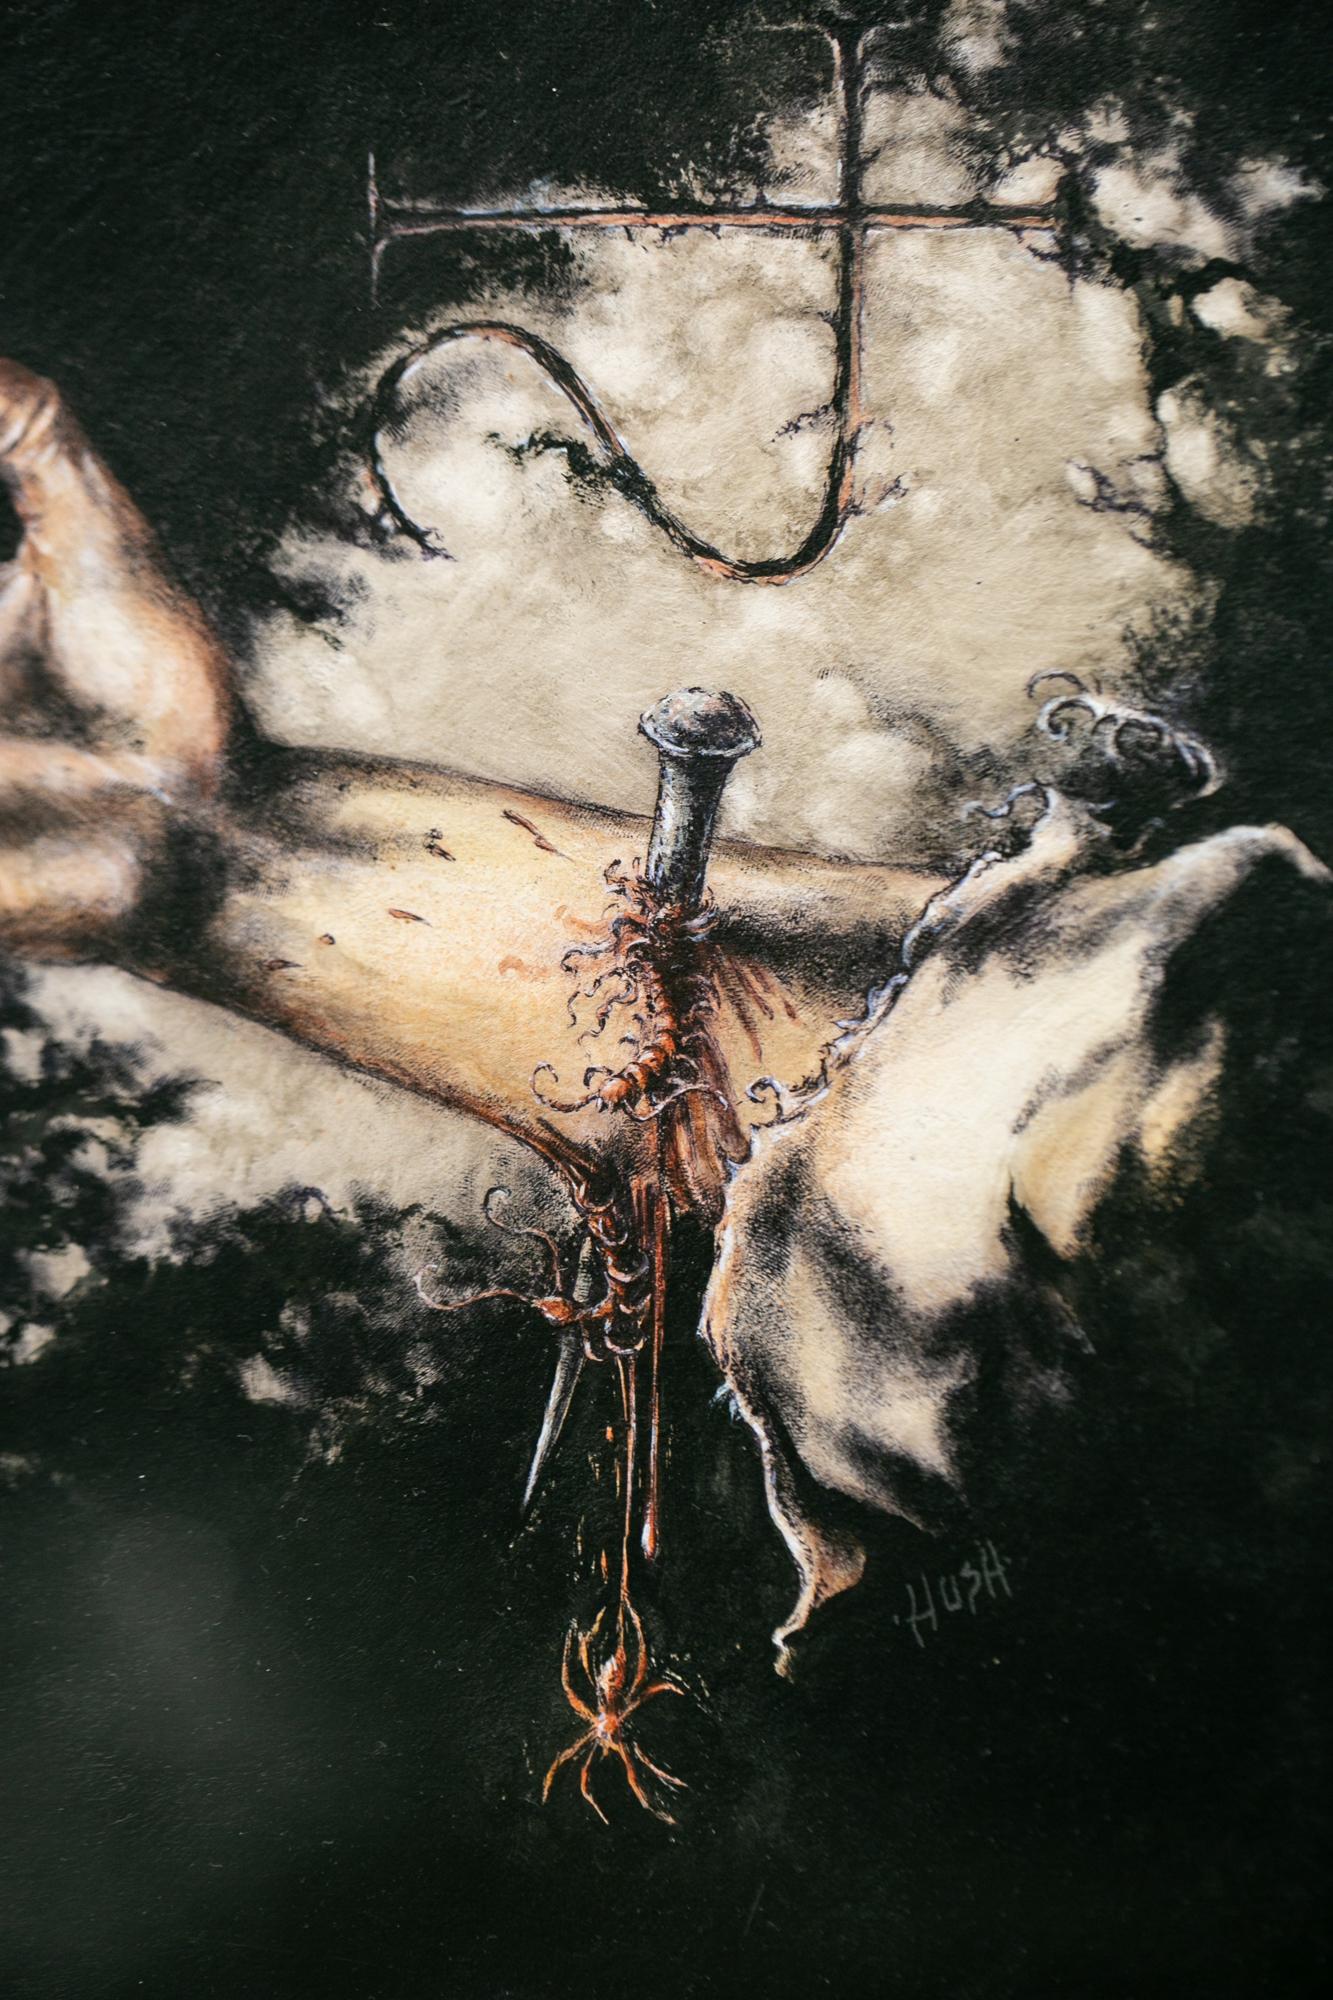 « La marque d'Eibon », peinture figurative, acrylique, aquarelle, encre, main, bras - Contemporain Art par Jeremy Hush